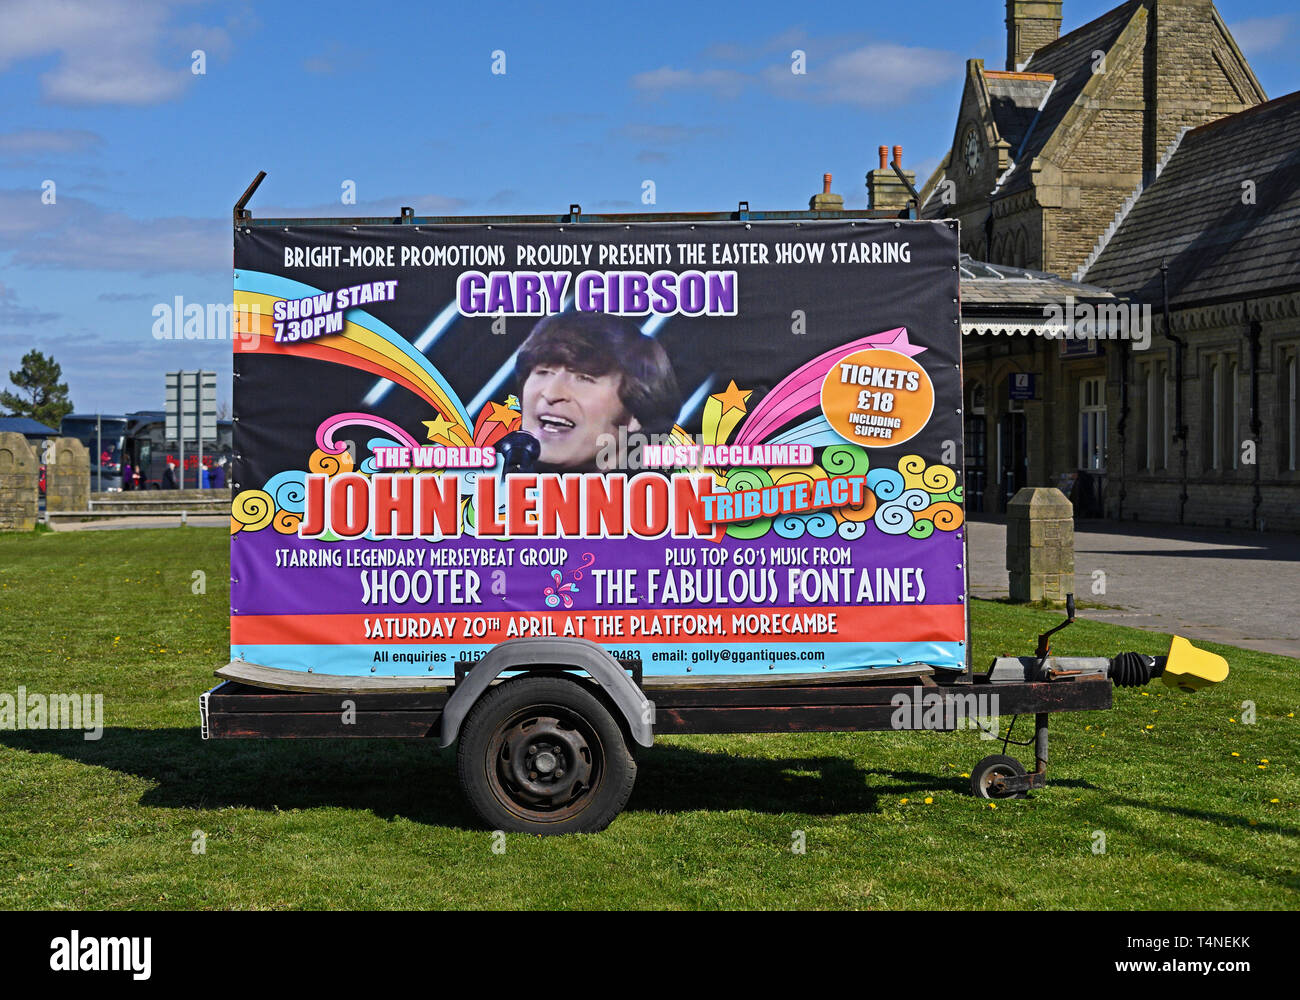 Mobile Werbefläche. Gary Gibson der weltweit renommiertesten John Lennon tribute handeln. Marine Drive, Morecambe, Lancashire, England, Großbritannien Stockfoto